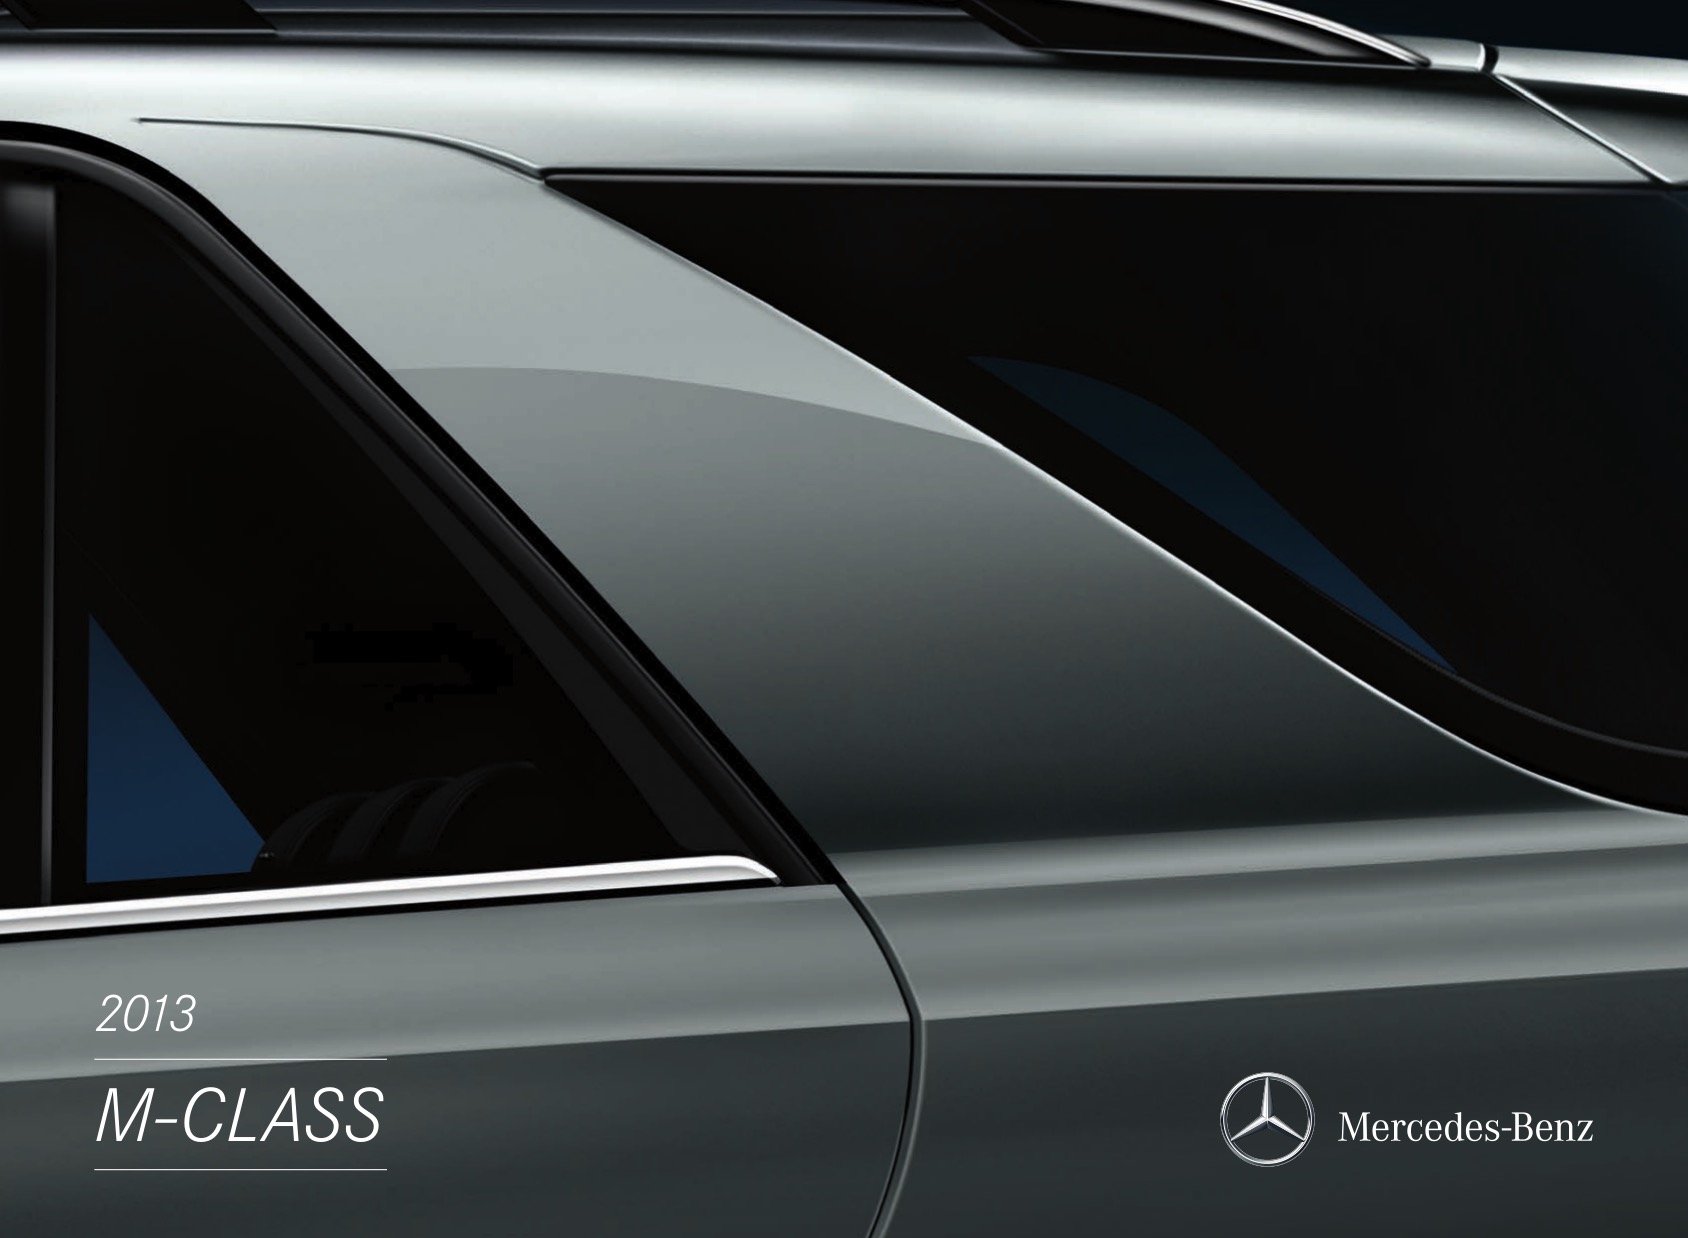 2013 Mercedes-Benz M-Class Brochure